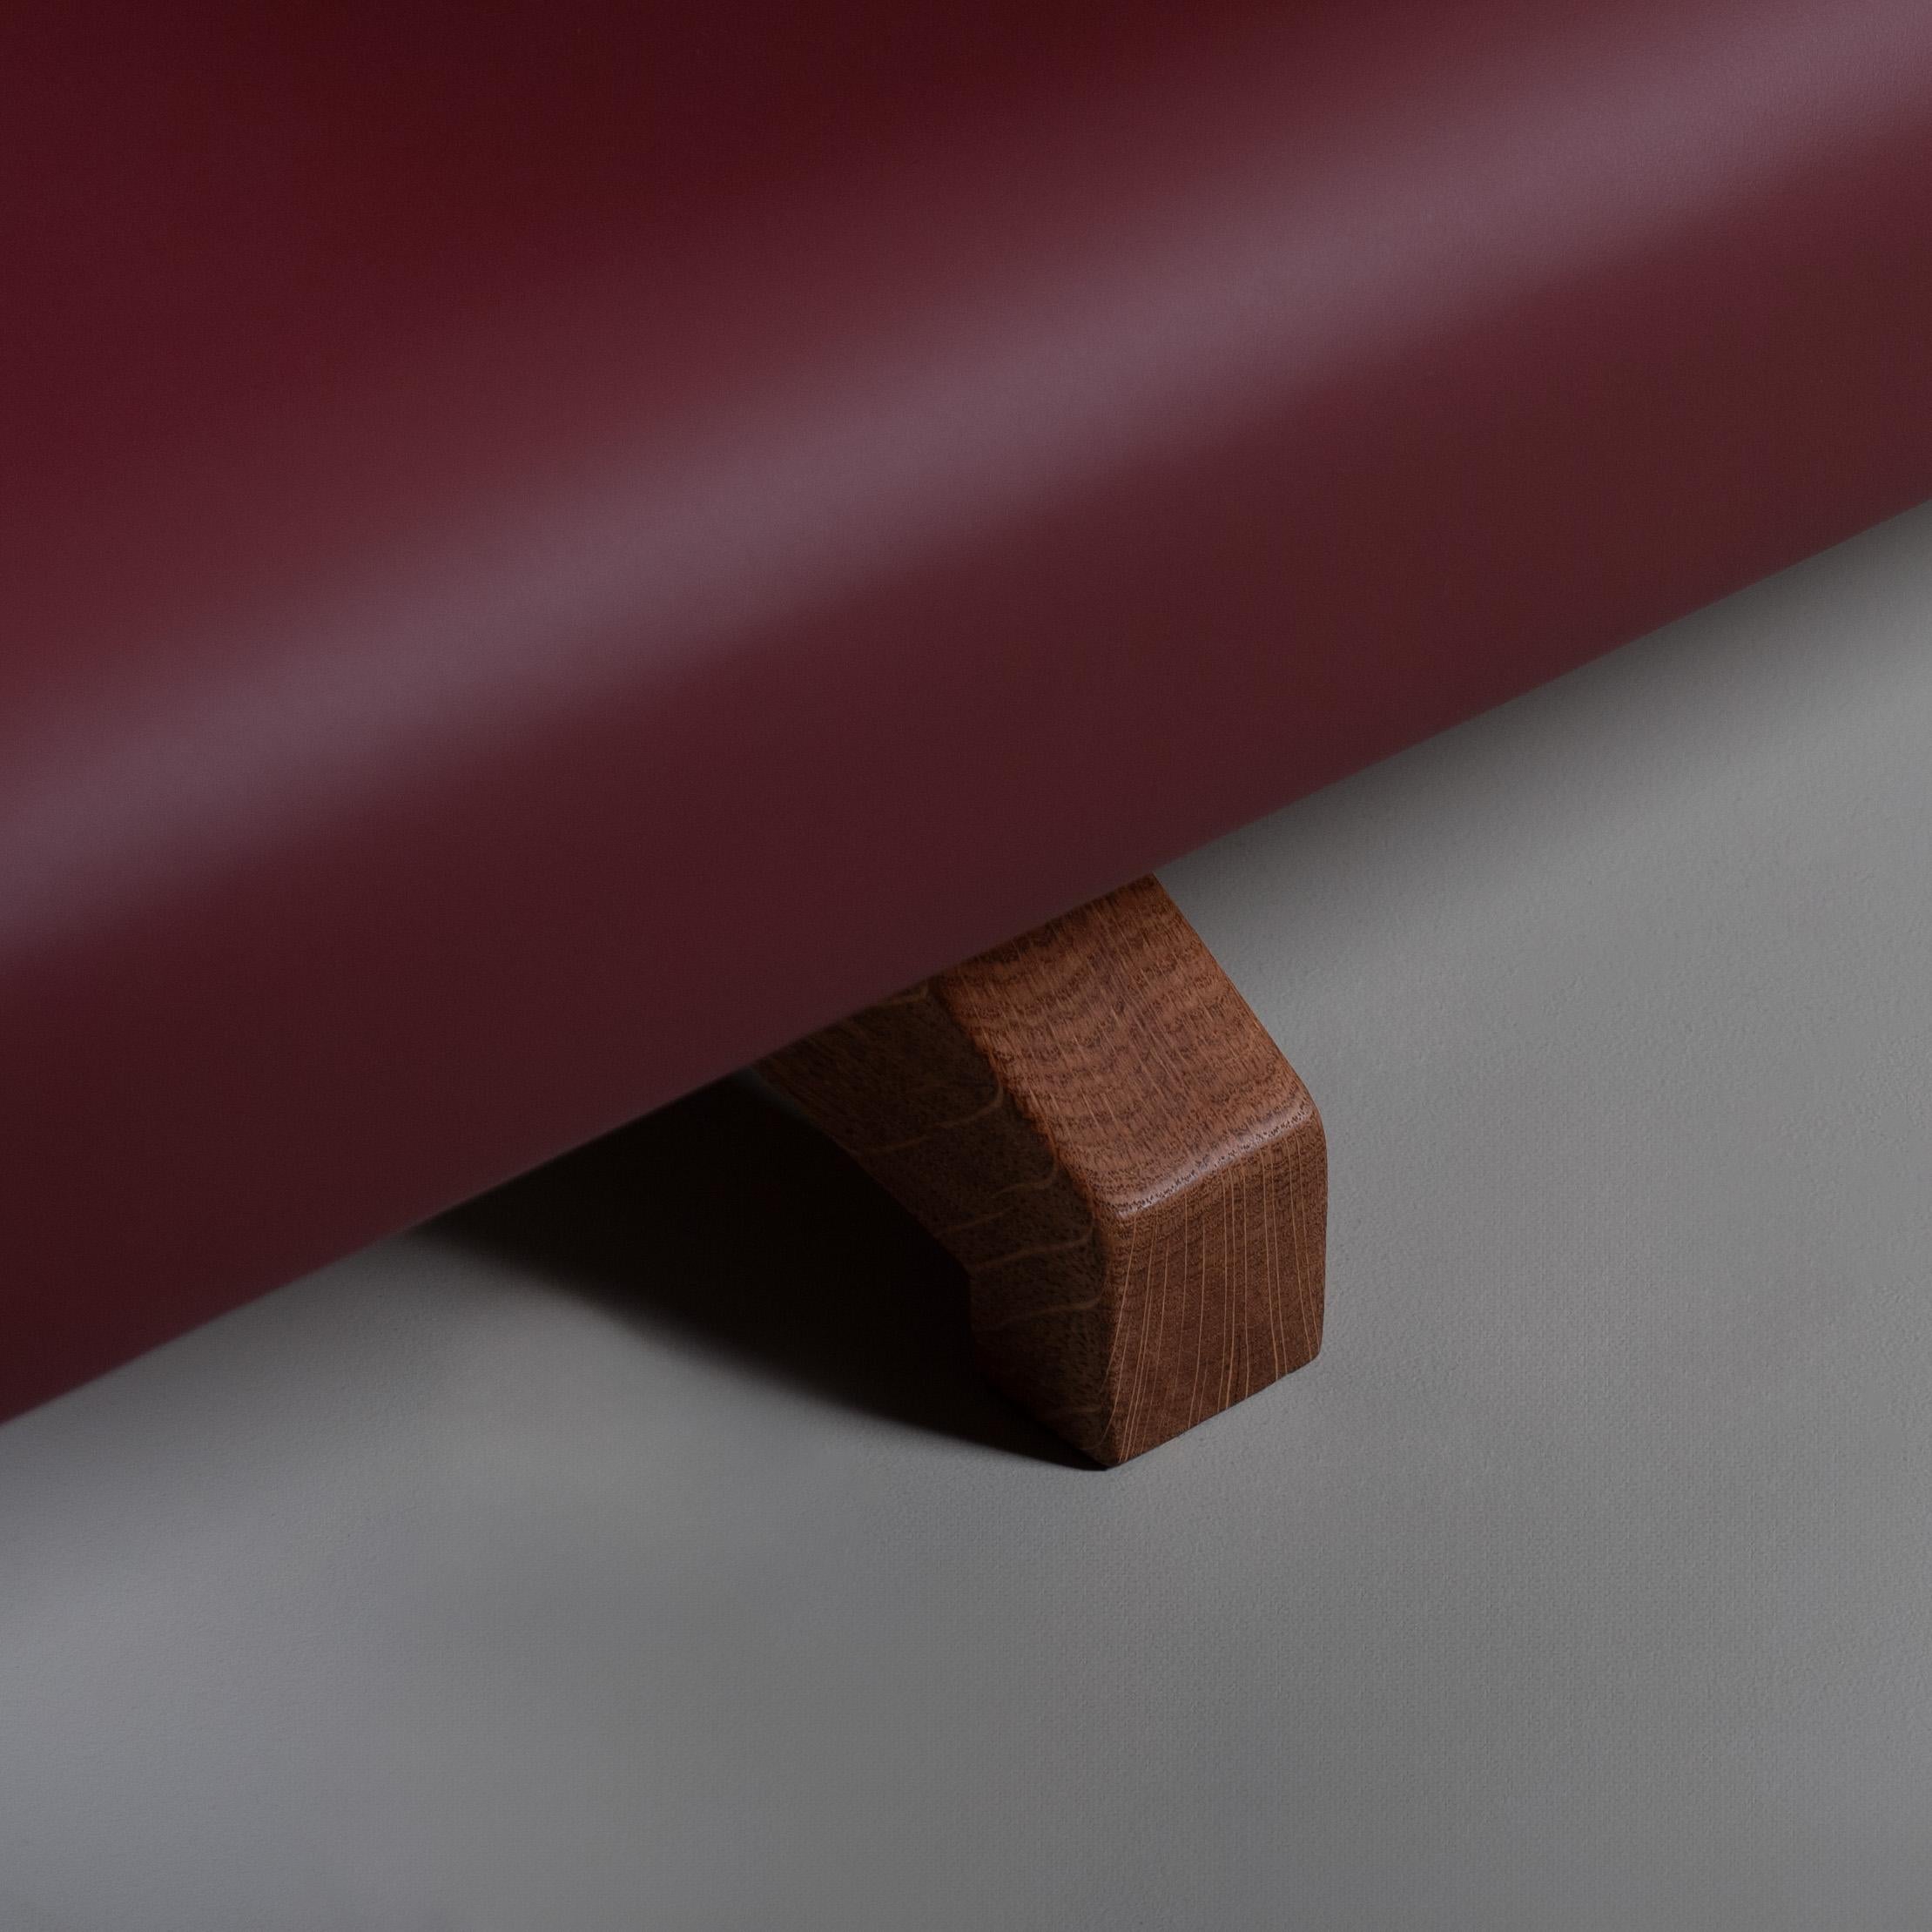 Grand pouf/table de canapé entièrement fabriqué à la main avec un design unique à deux niveaux. Le cadre est construit en chêne anglais à grain droit pour une plus grande stabilité et recouvert d'un cuir de qualité supérieure cousu proprement dans